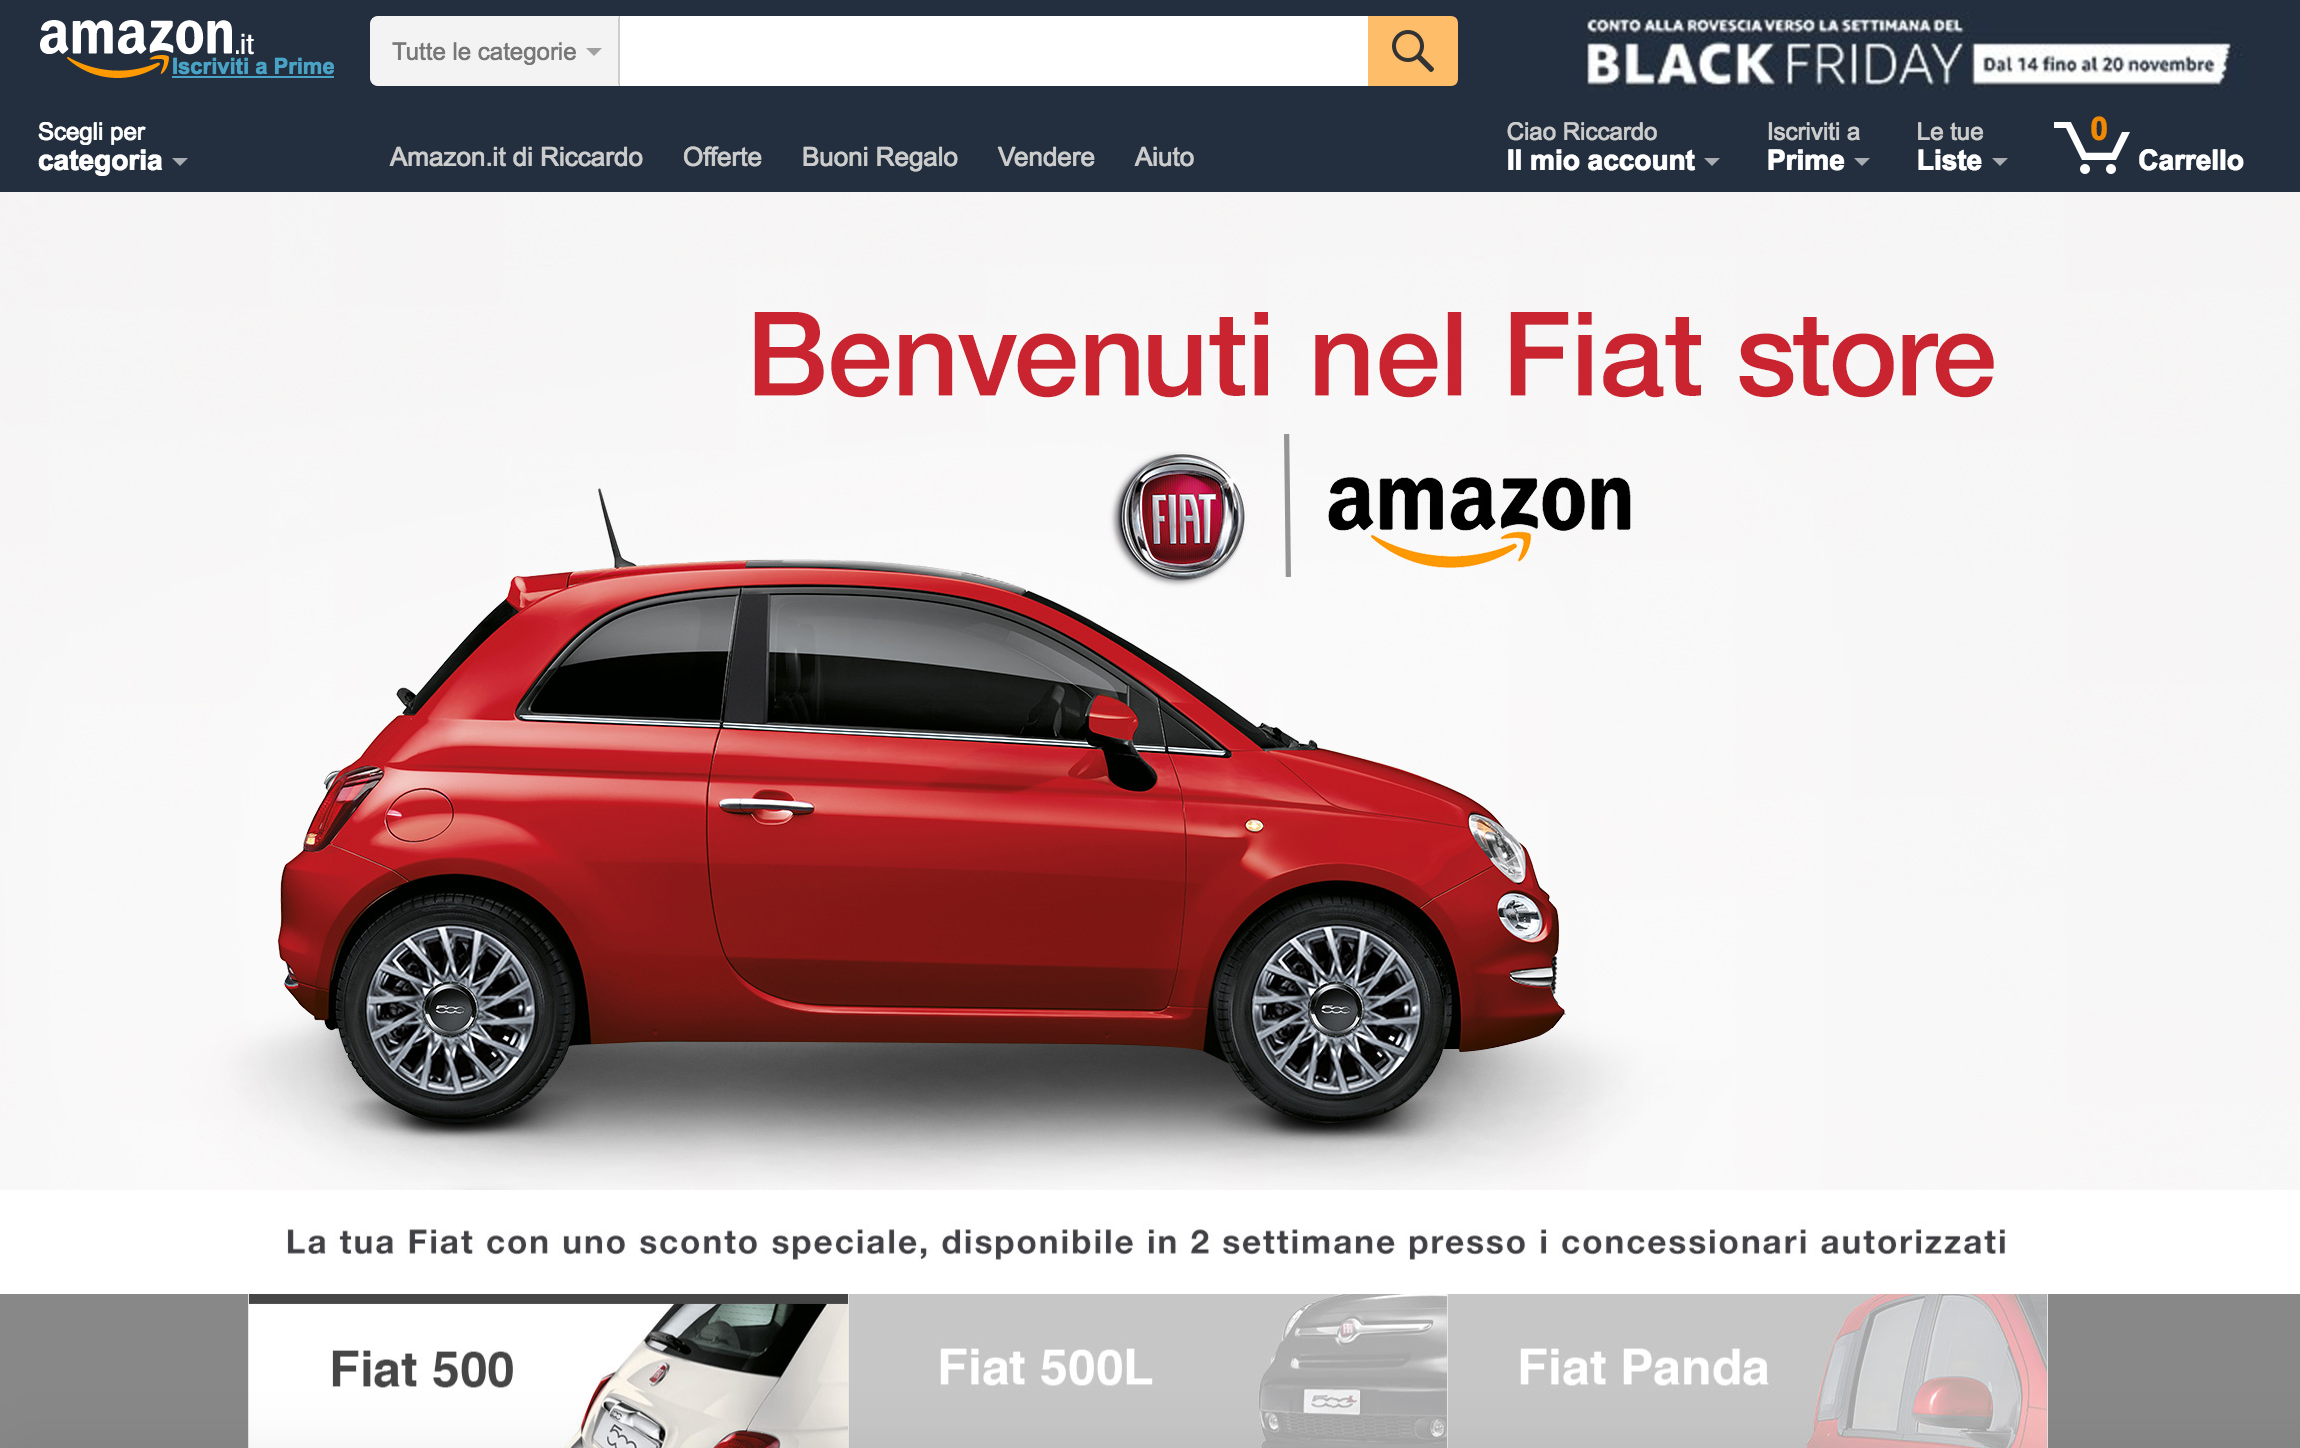 Fiat 500 e Panda in vendita su Amazon. E’ arrivata la fine delle concessionarie?